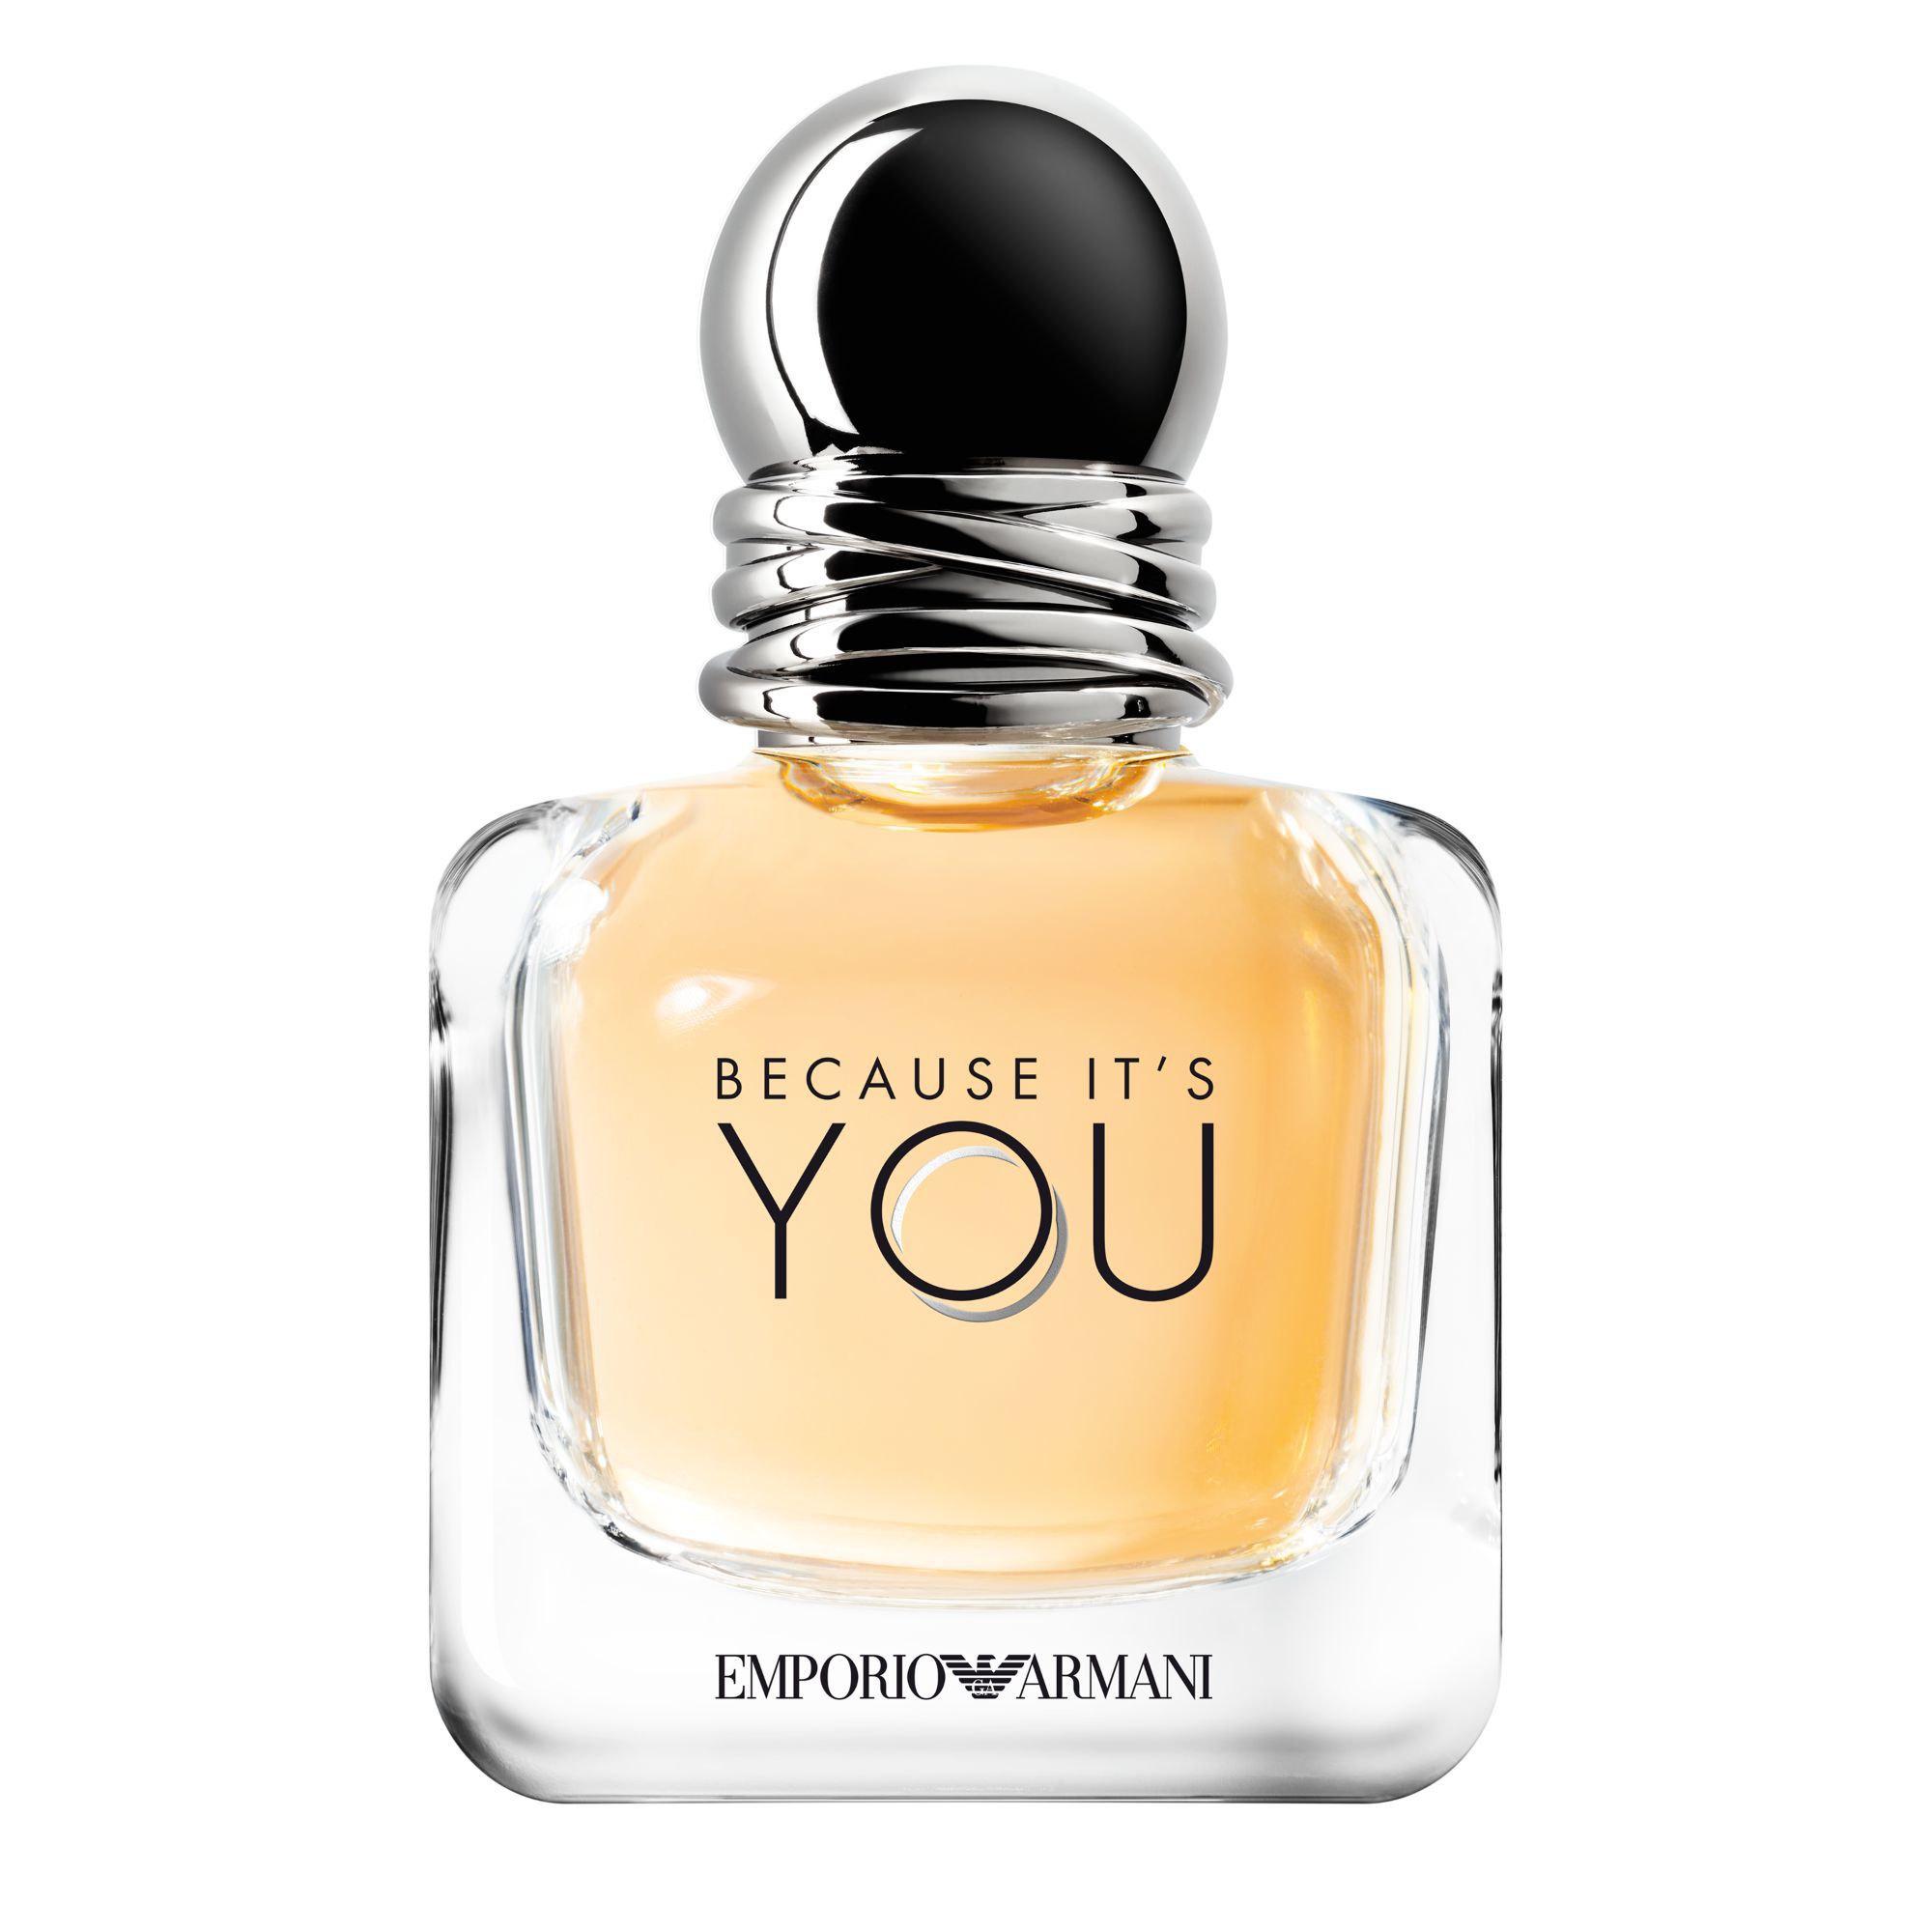  Because It's You Eau de Parfum